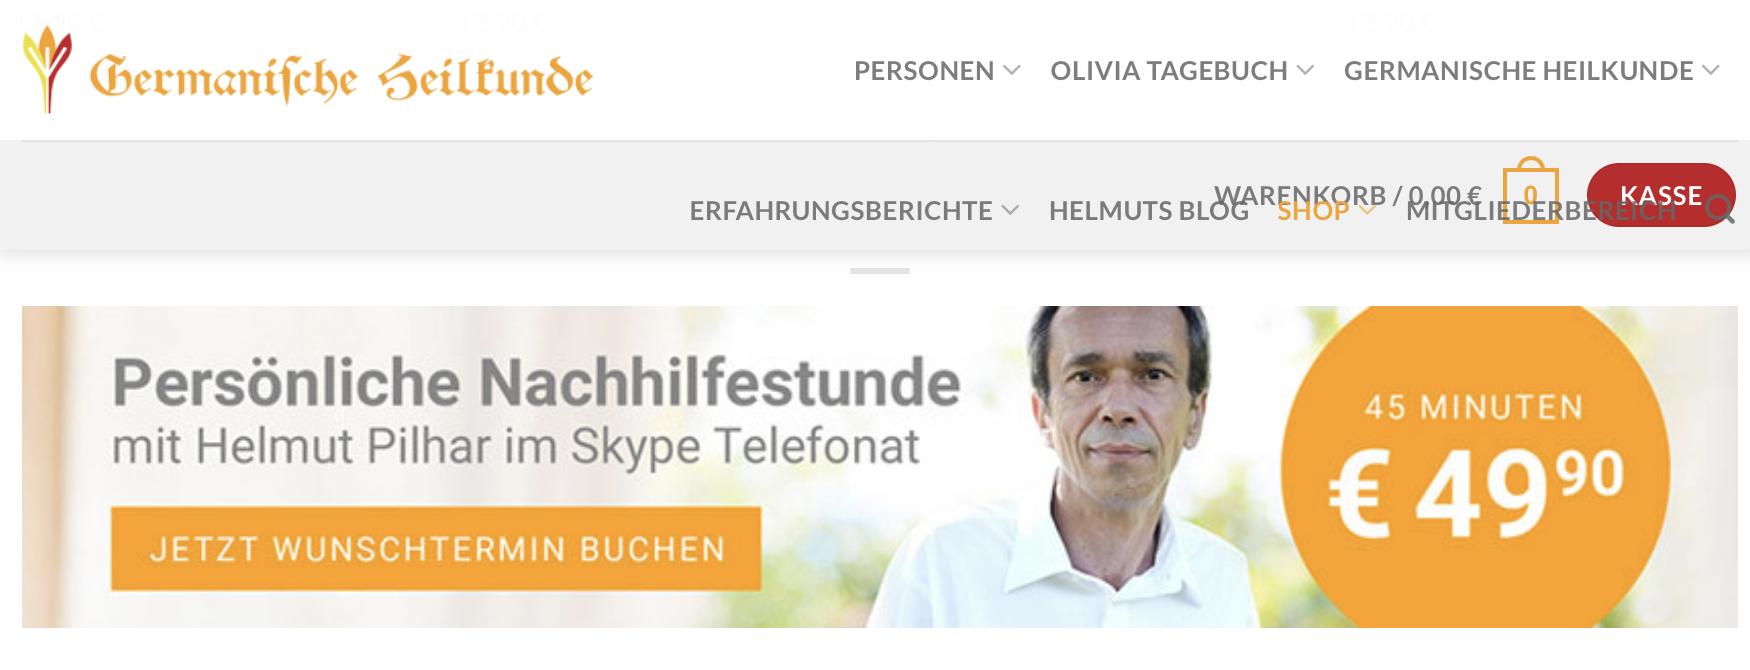 Pilhars Germanische Heilkunde neu – mit "Nachhilfe" via Skype um 49,90€/Stunde und "Kasse"-Button